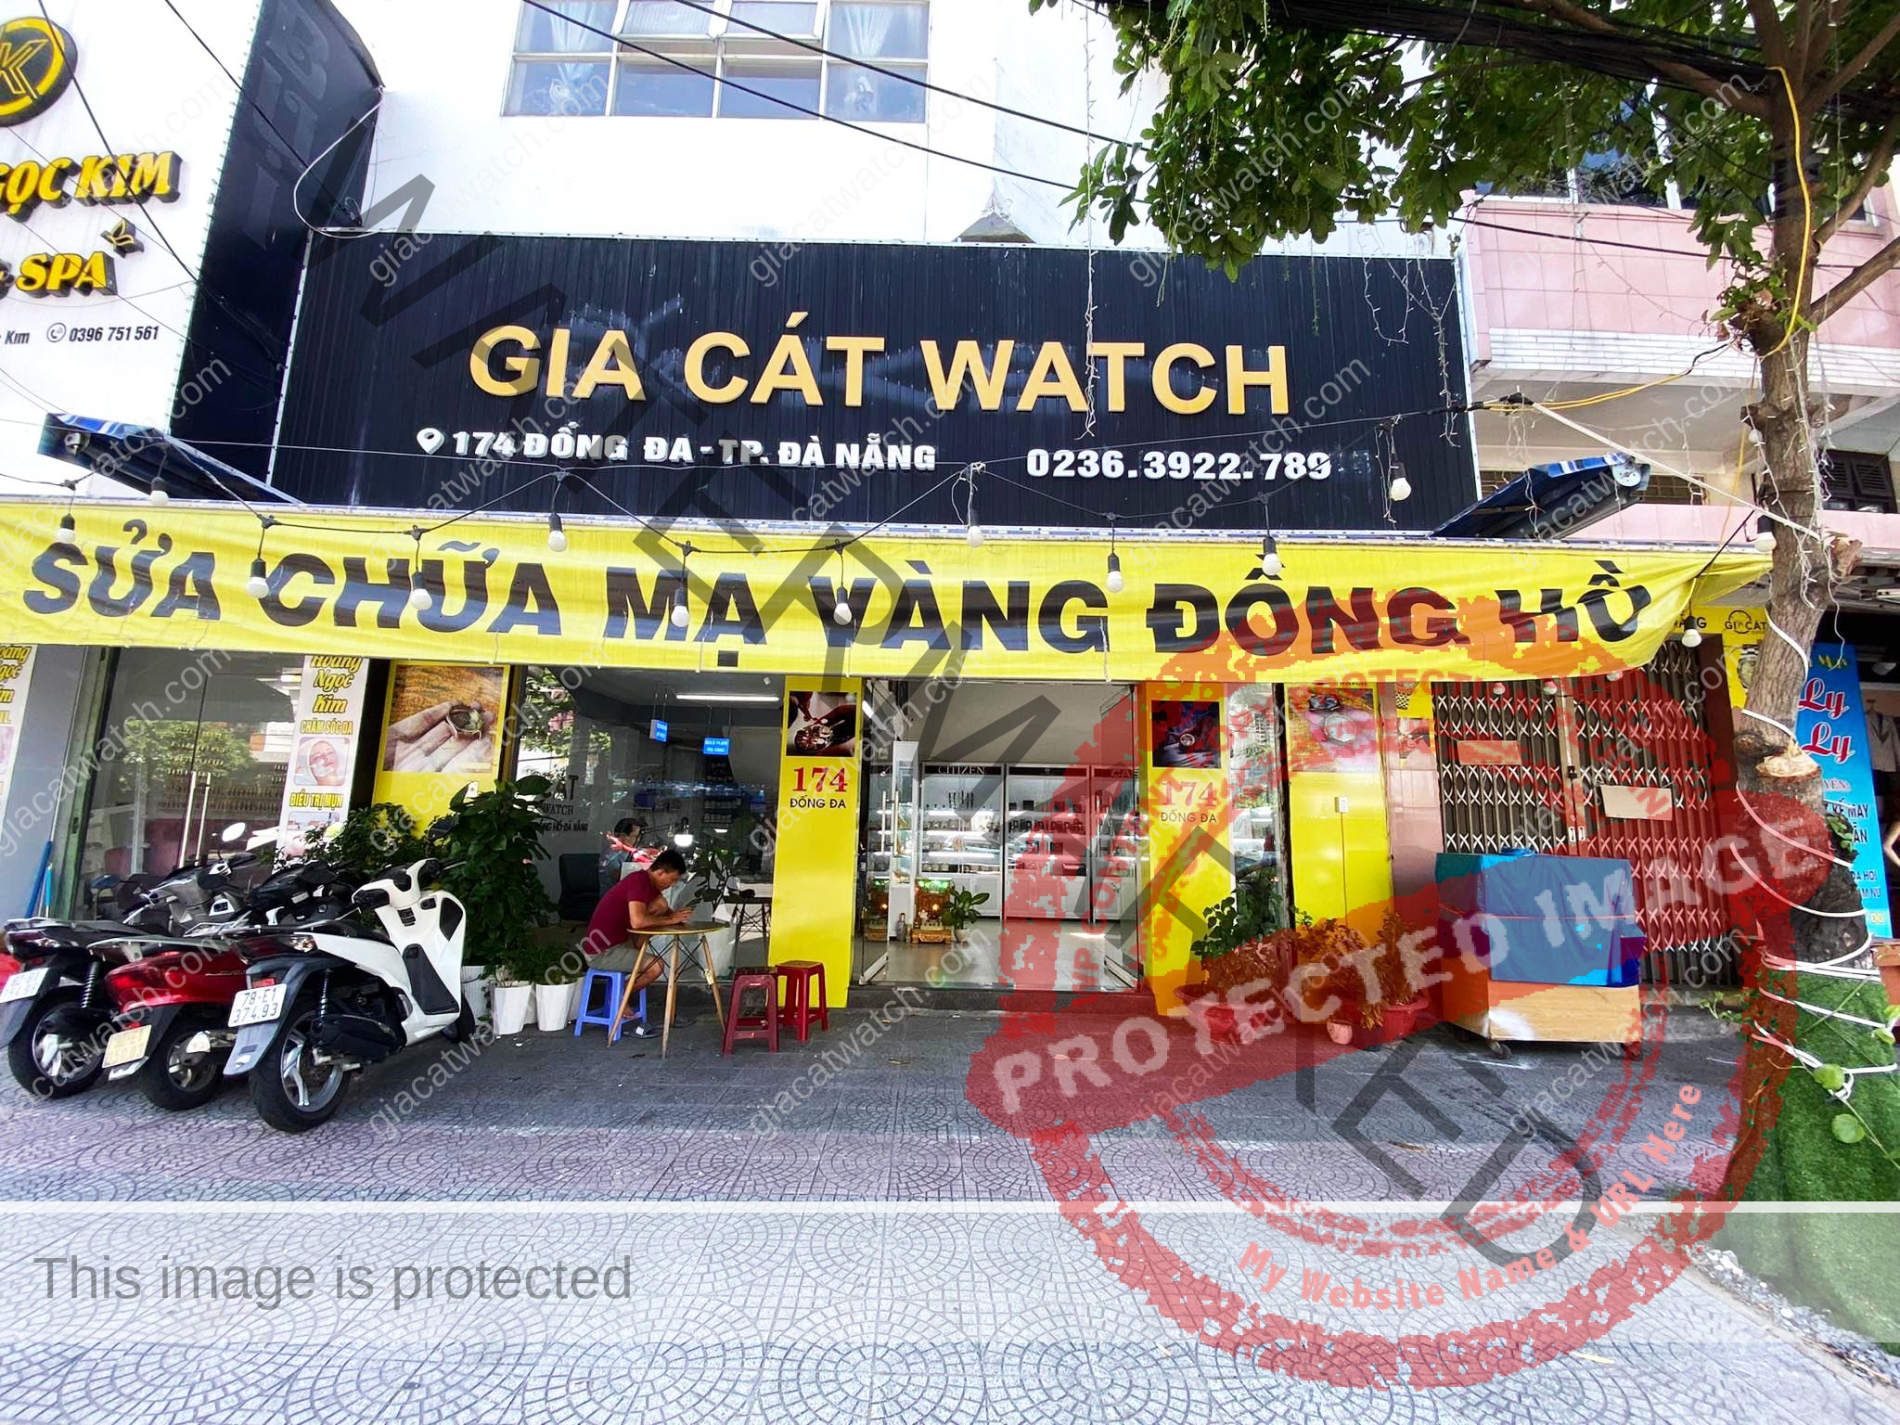 Trung tâm sửa chữa đồng hồ hàng đầu tại Đà Nẵng và miền trung